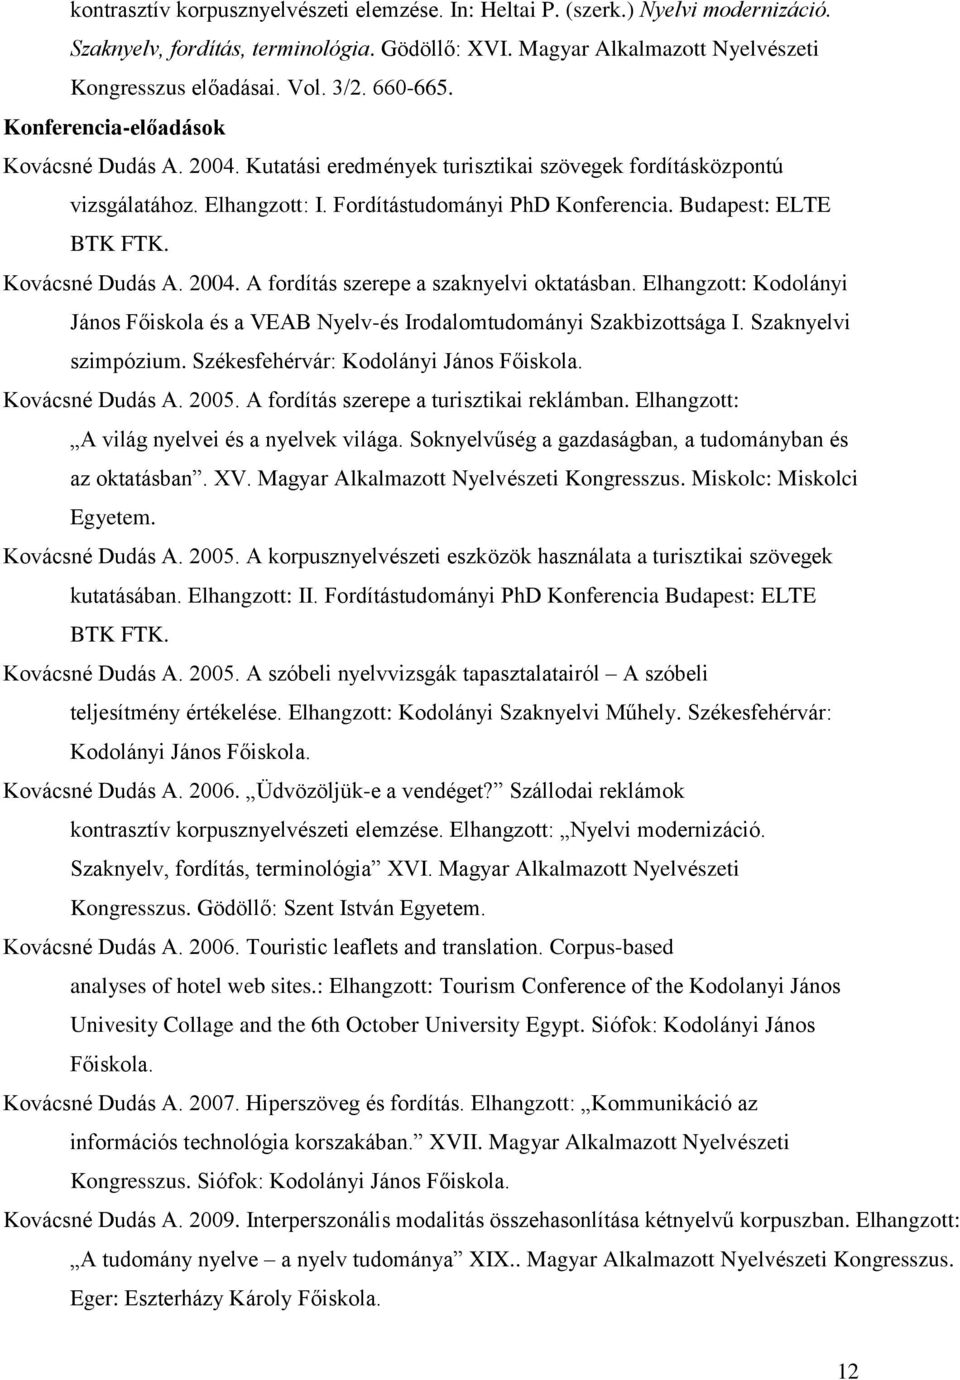 Budapest: ELTE BTK FTK. Kovácsné Dudás A. 2004. A fordítás szerepe a szaknyelvi oktatásban. Elhangzott: Kodolányi János Főiskola és a VEAB Nyelv-és Irodalomtudományi Szakbizottsága I.